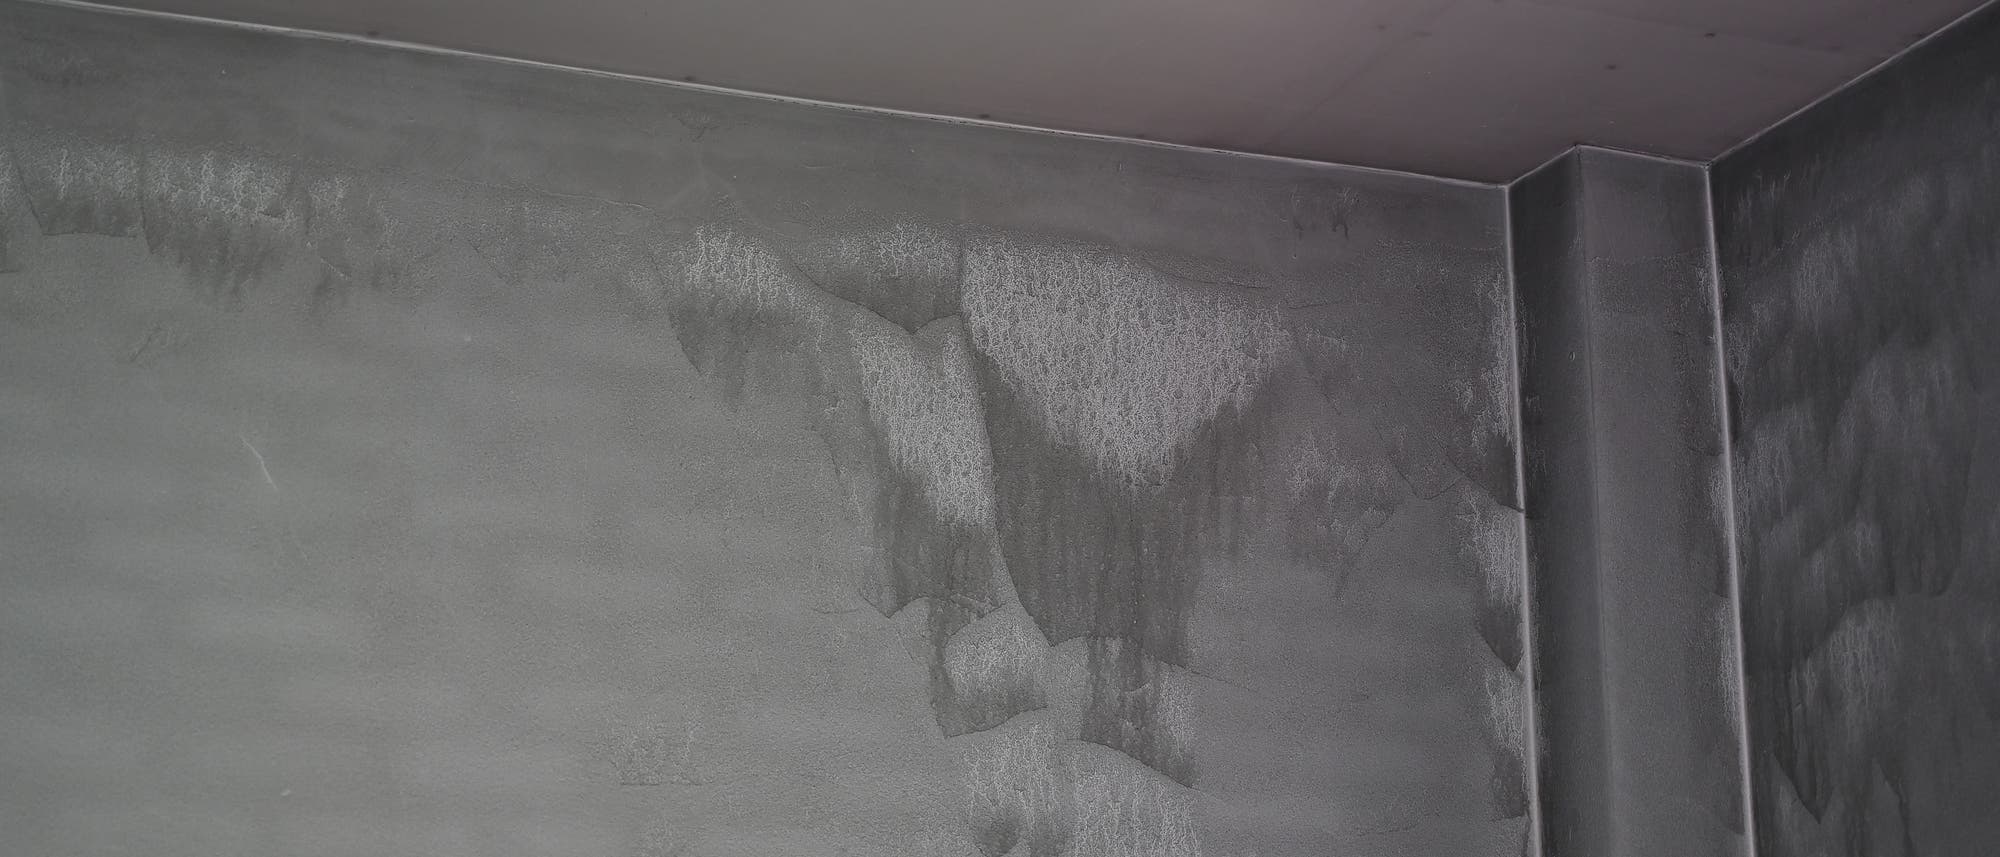 Eine ehemals weiße Wand zeigt starke Ablagerungen von schwarzem Staub